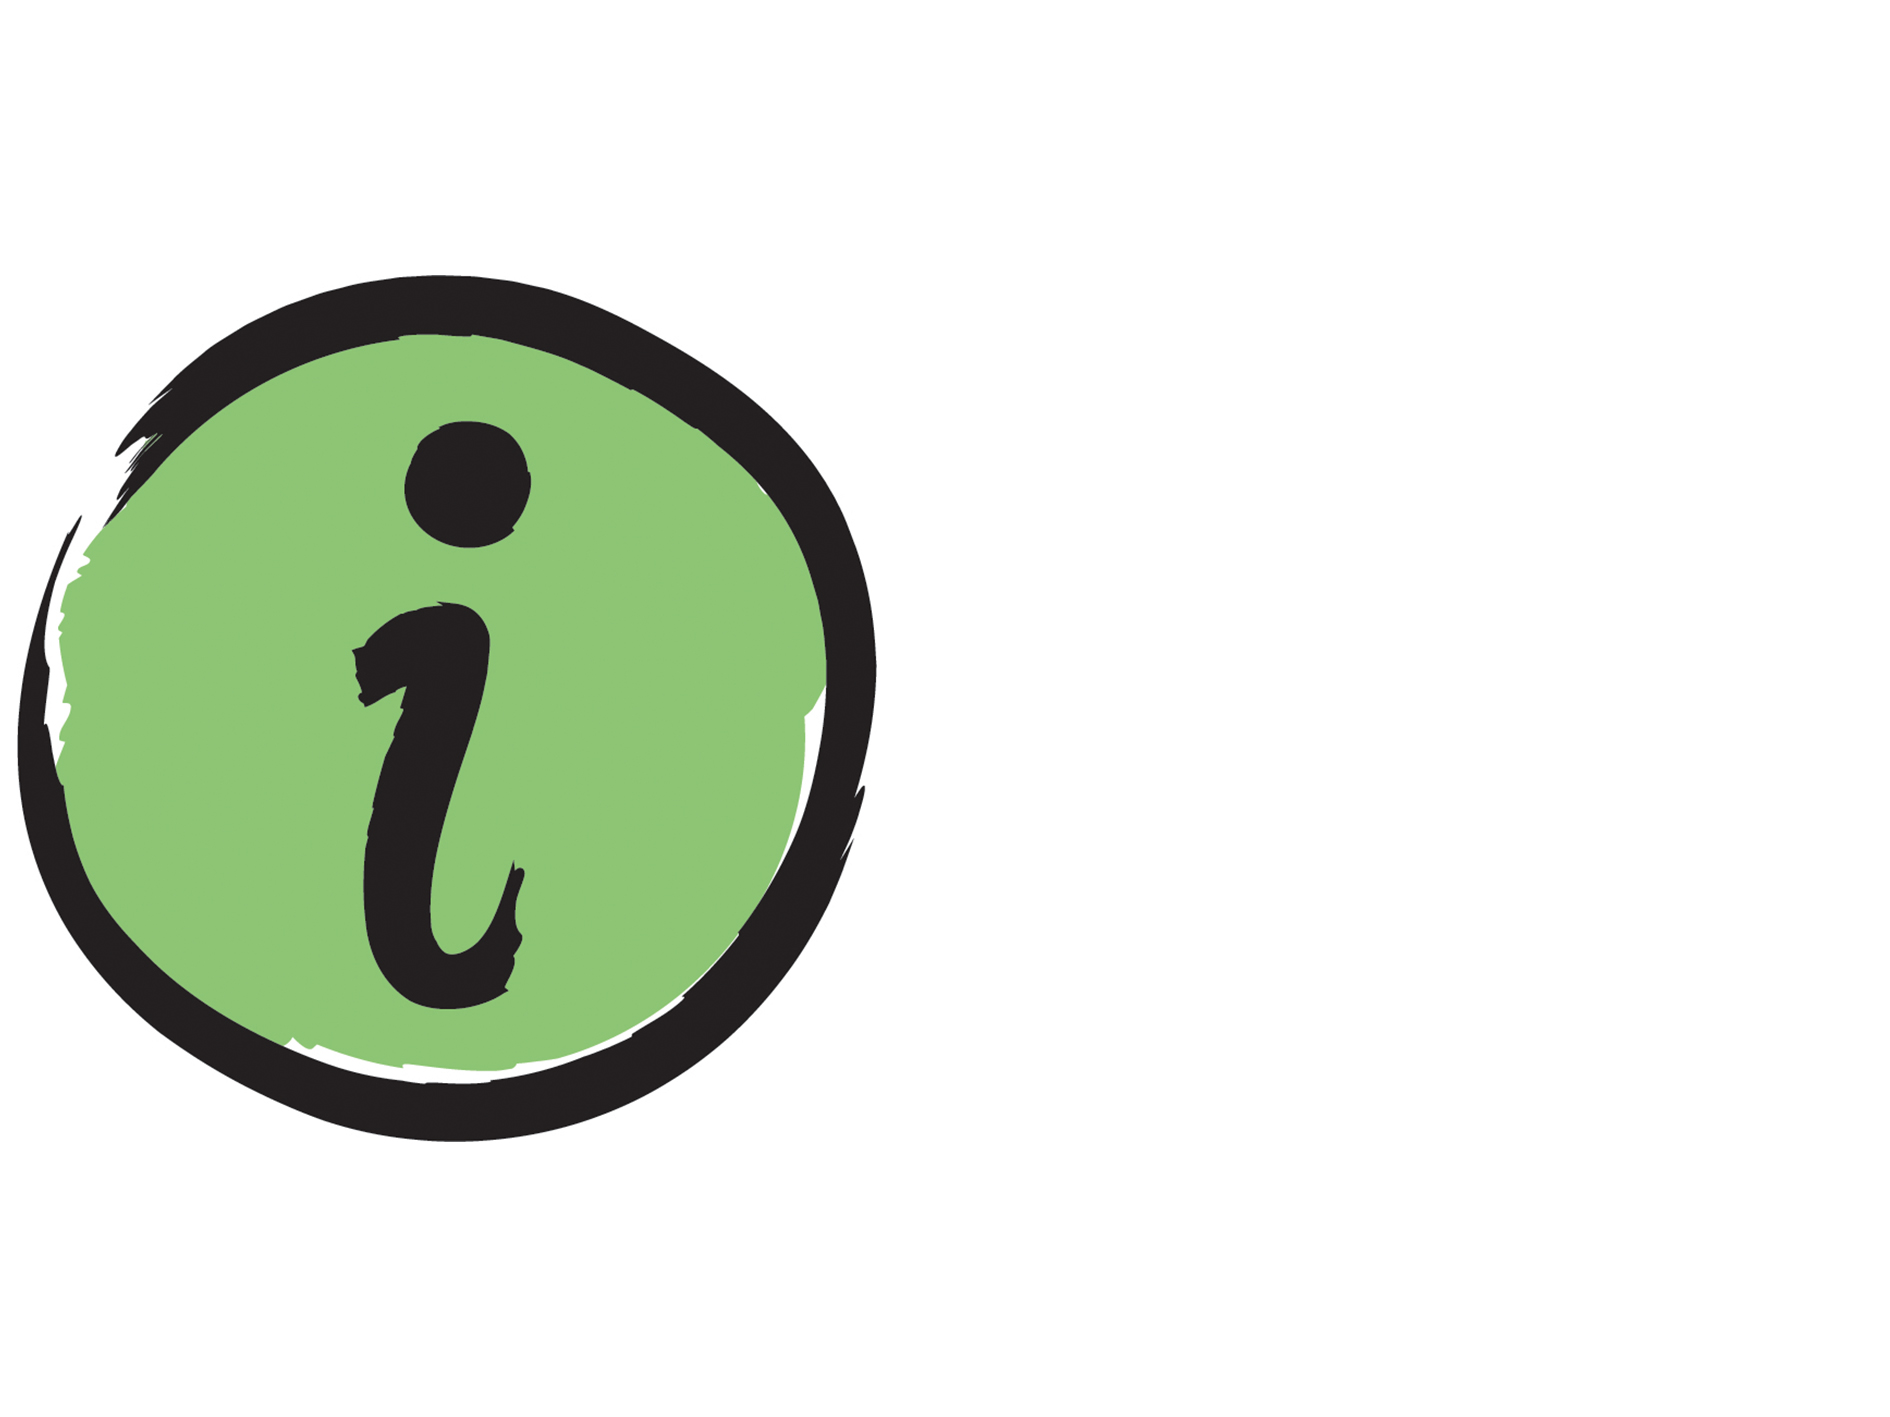 Une icône de la lettre « I » pour « Information ».